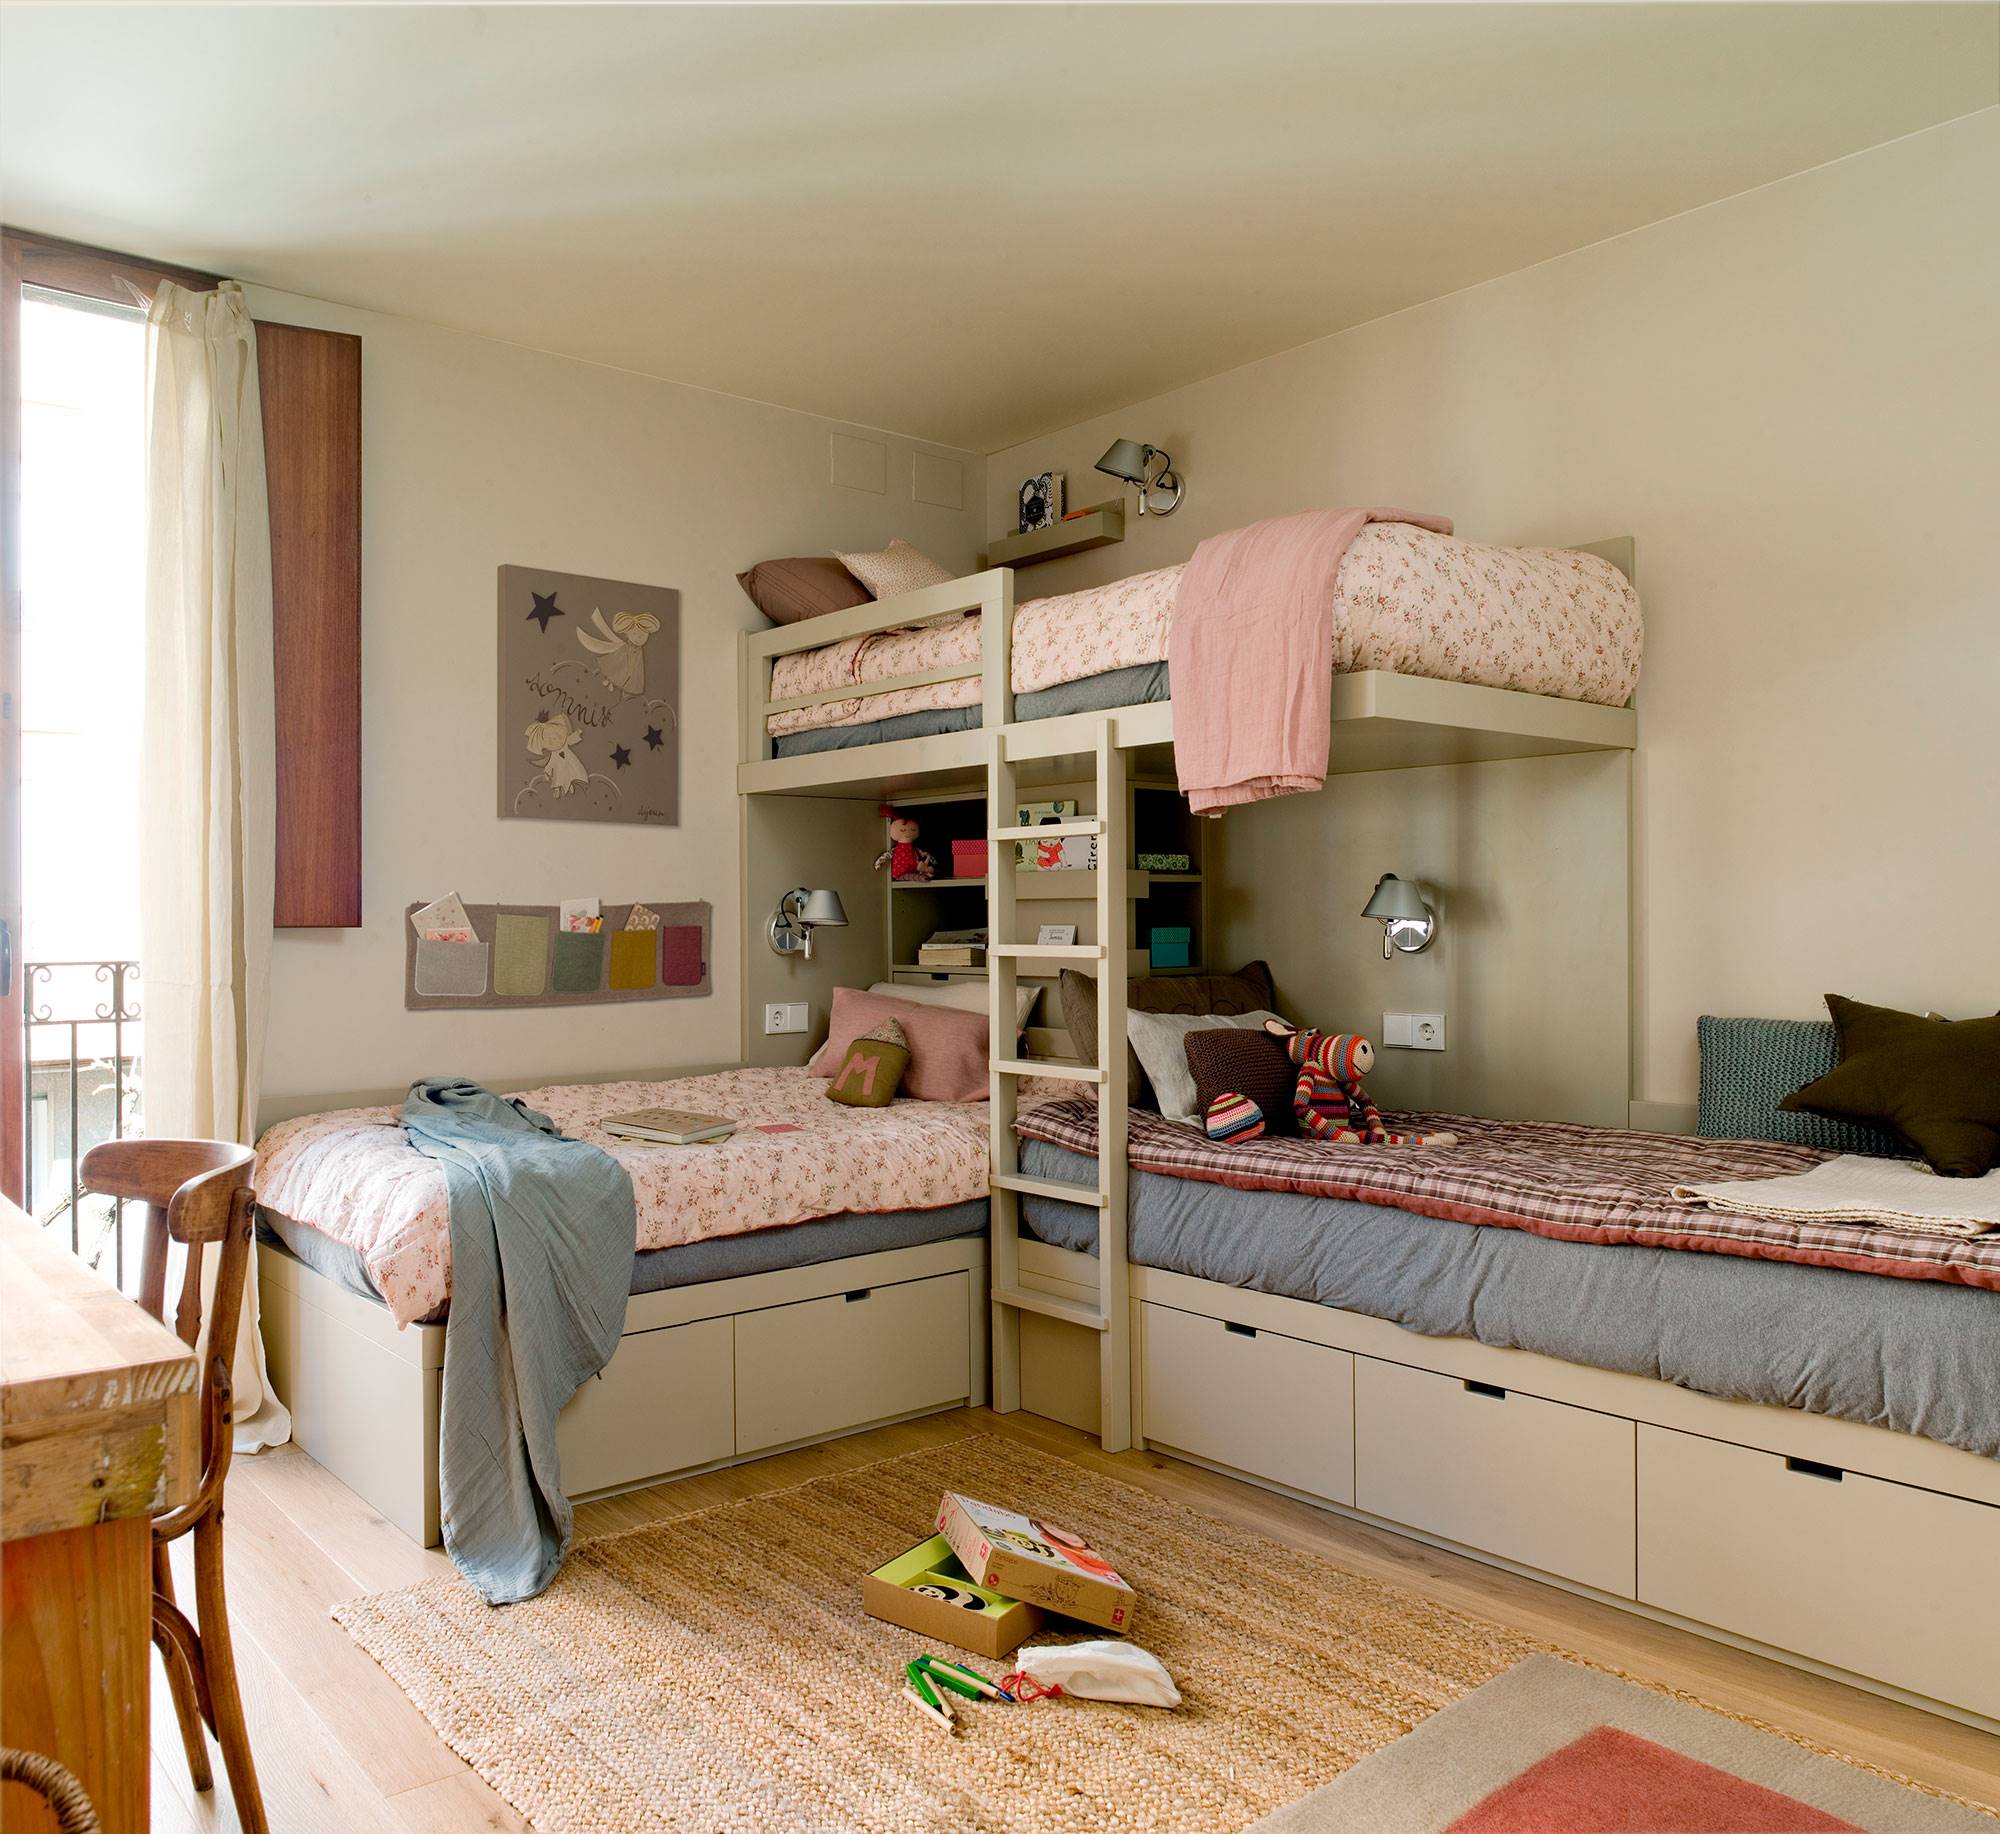 Habitación infantil con litera y cama inferior doble_00518567 O